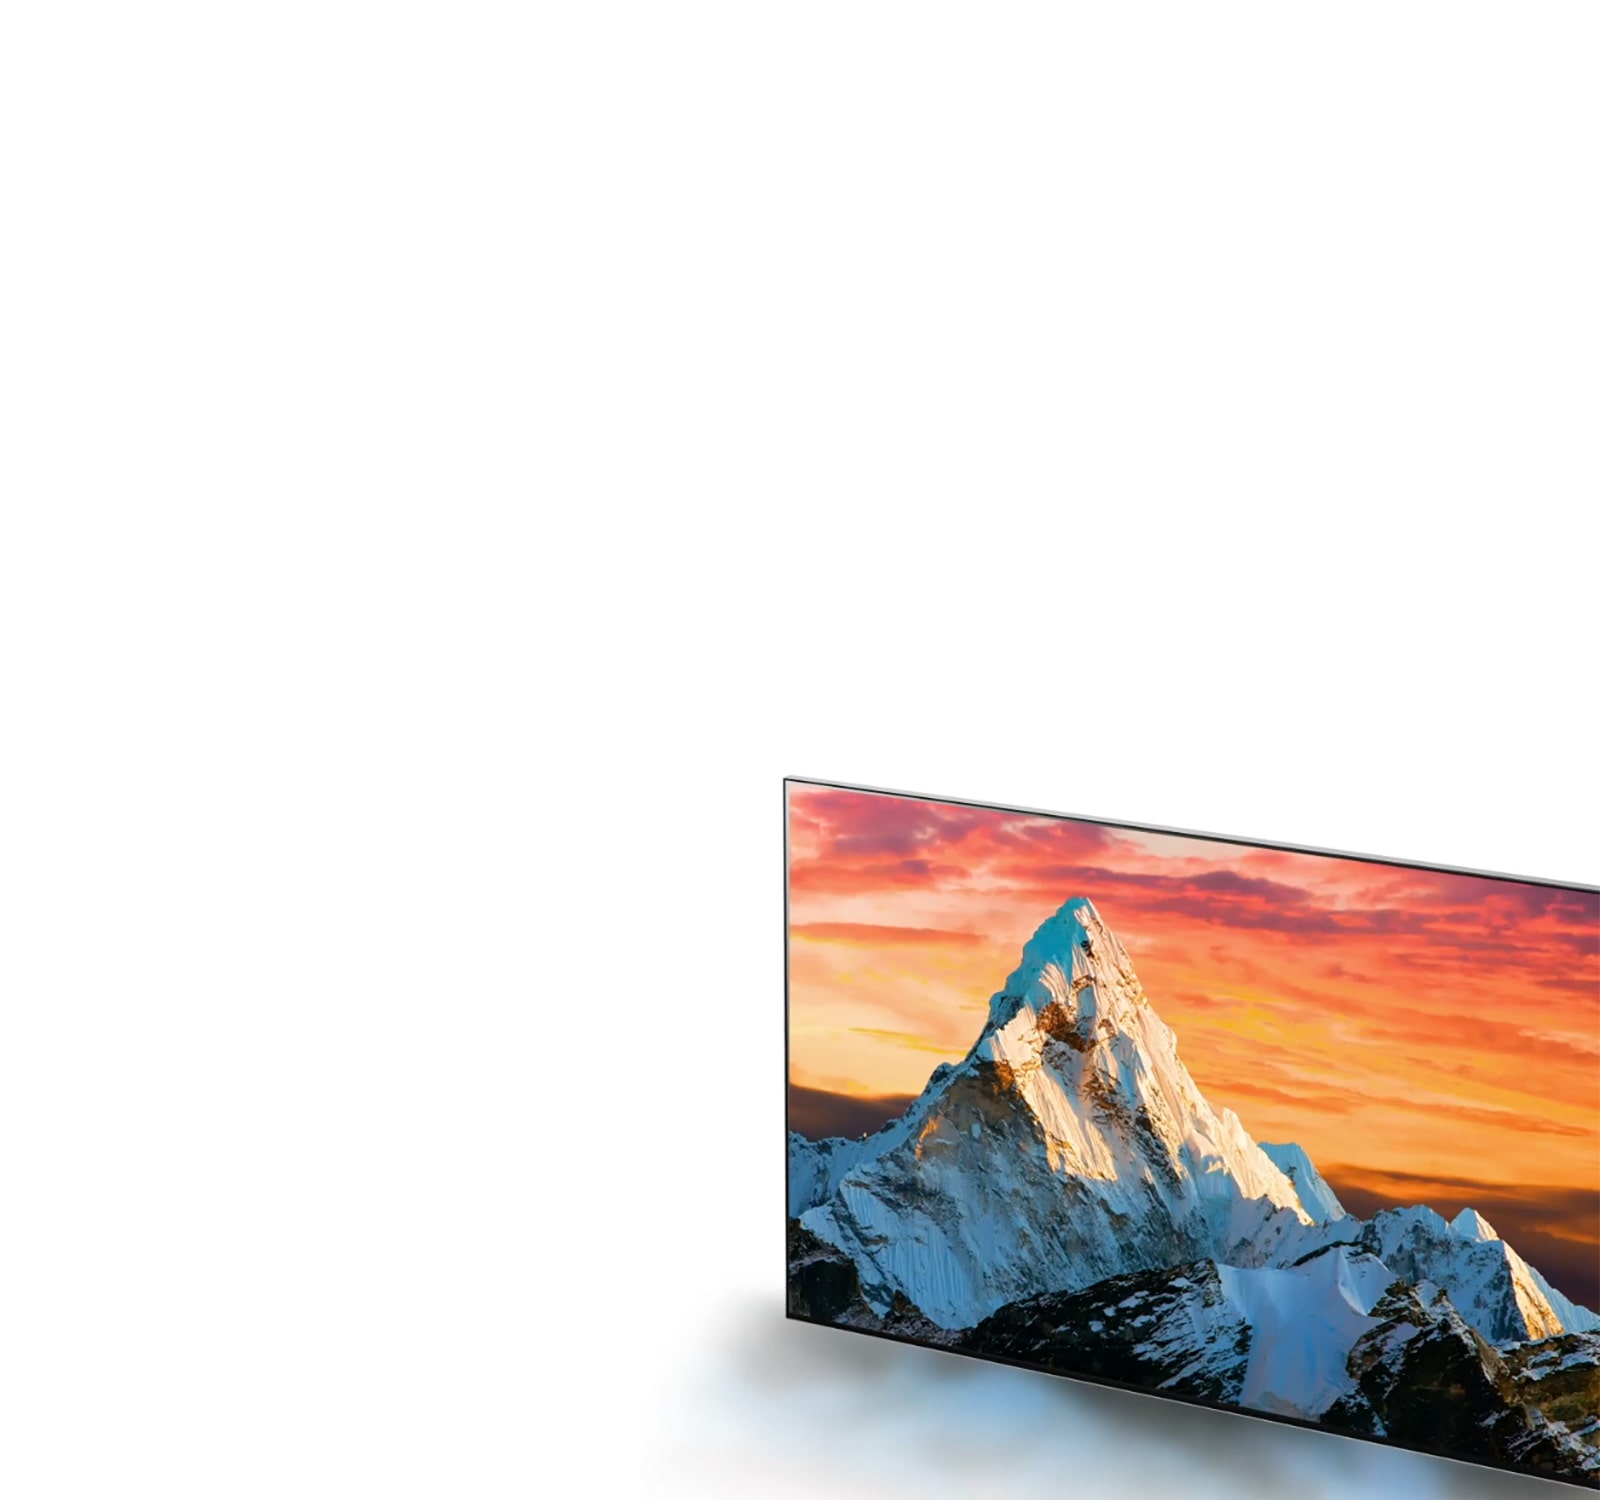 Μια τηλεόραση που δείχνει ένα βουνό με πορτοκαλί ηλιοβασίλεμα, με πιο καθαρές λεπτομέρειες καθώς μεγεθύνεται (αναπαραγωγή βίντεο).